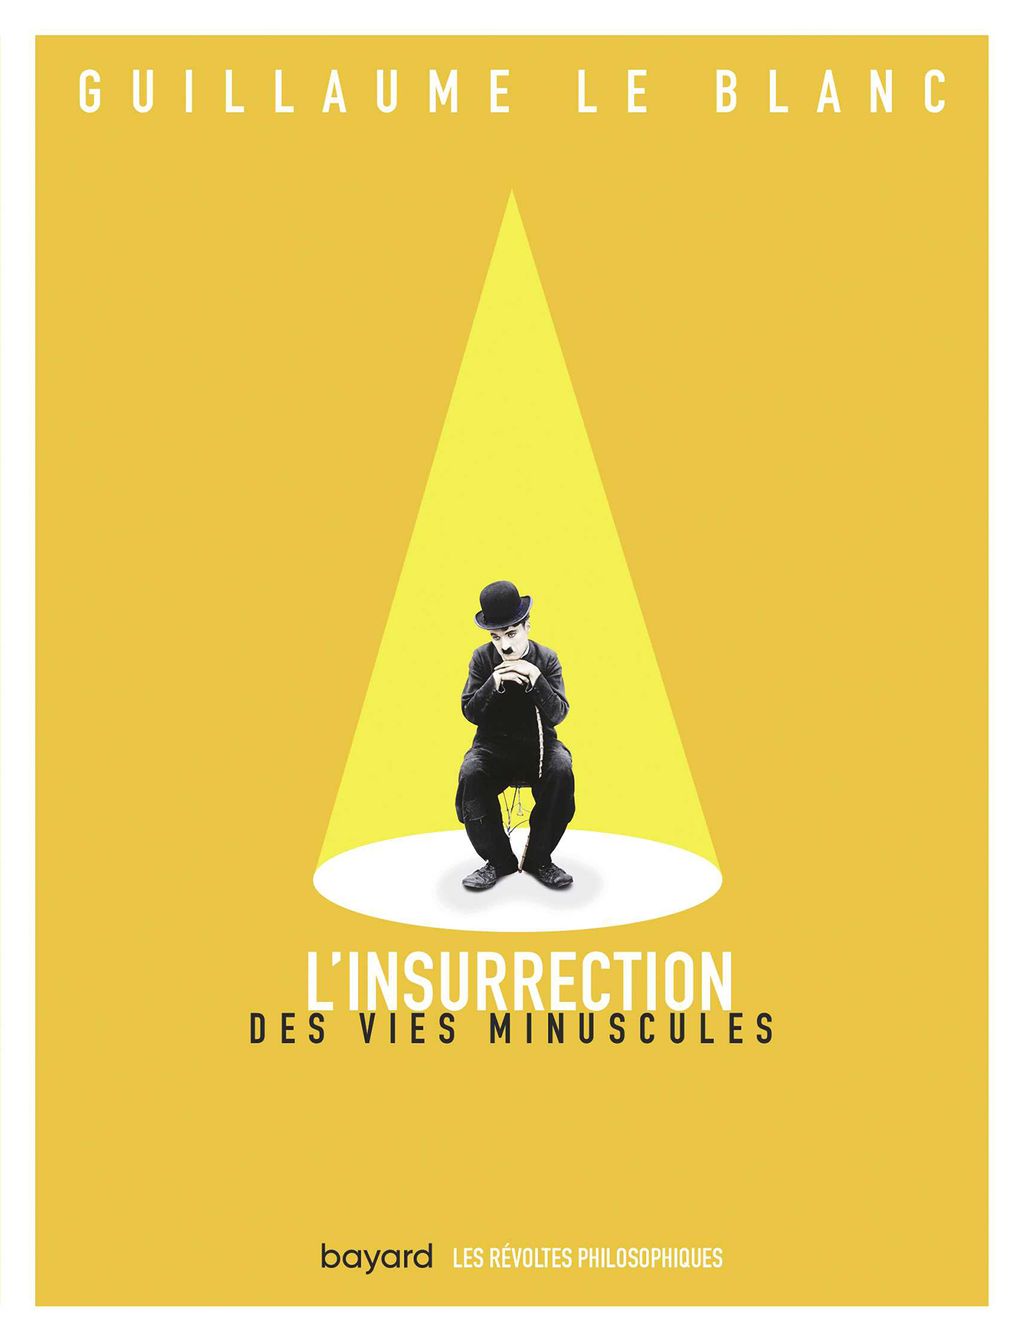 « L’insurrection des vies minuscules » cover